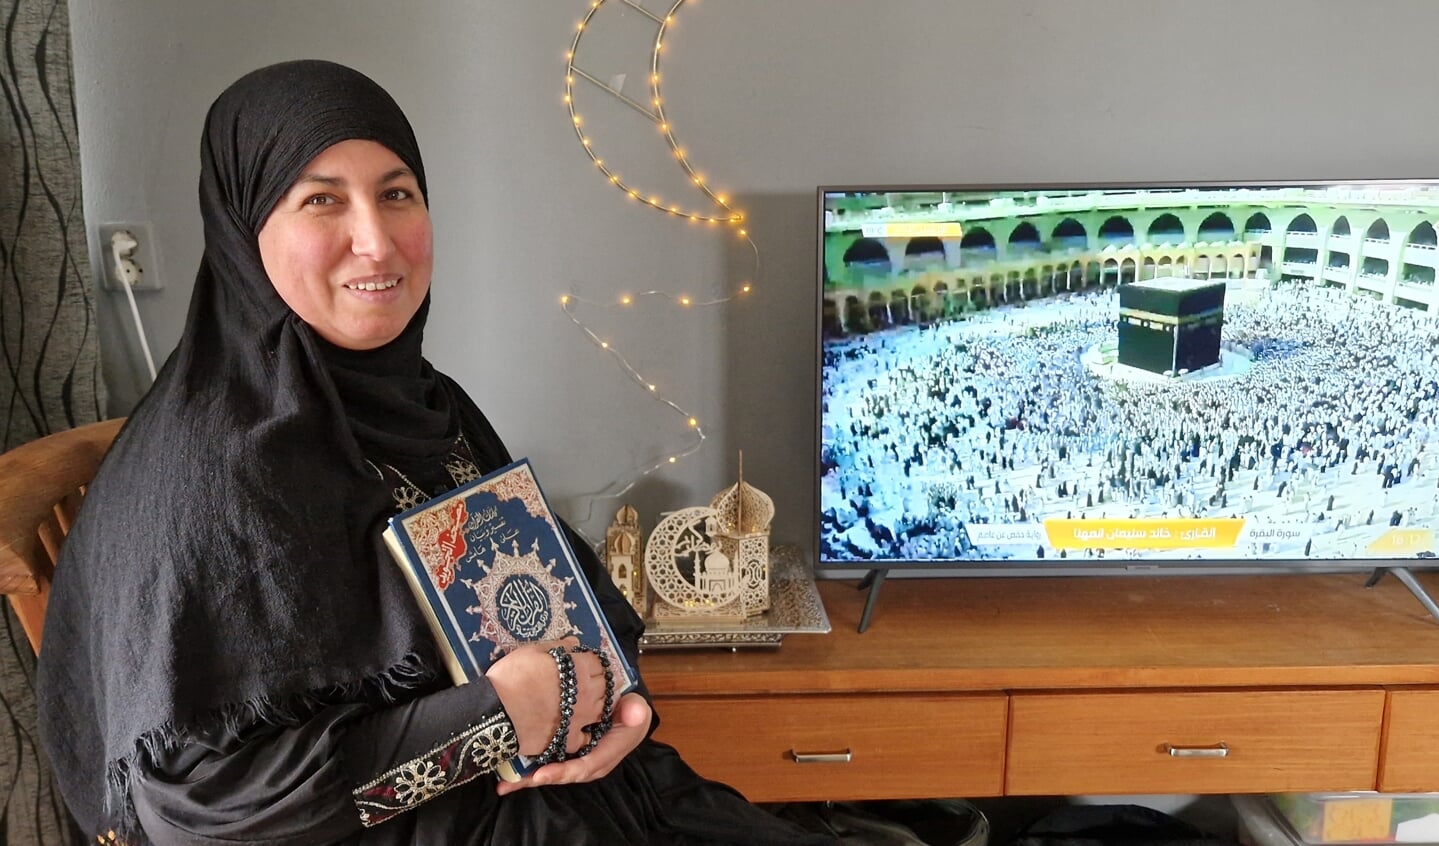 In haar handen houdt Samira de Koran vast en volgt dagelijks de beelden in Mekka